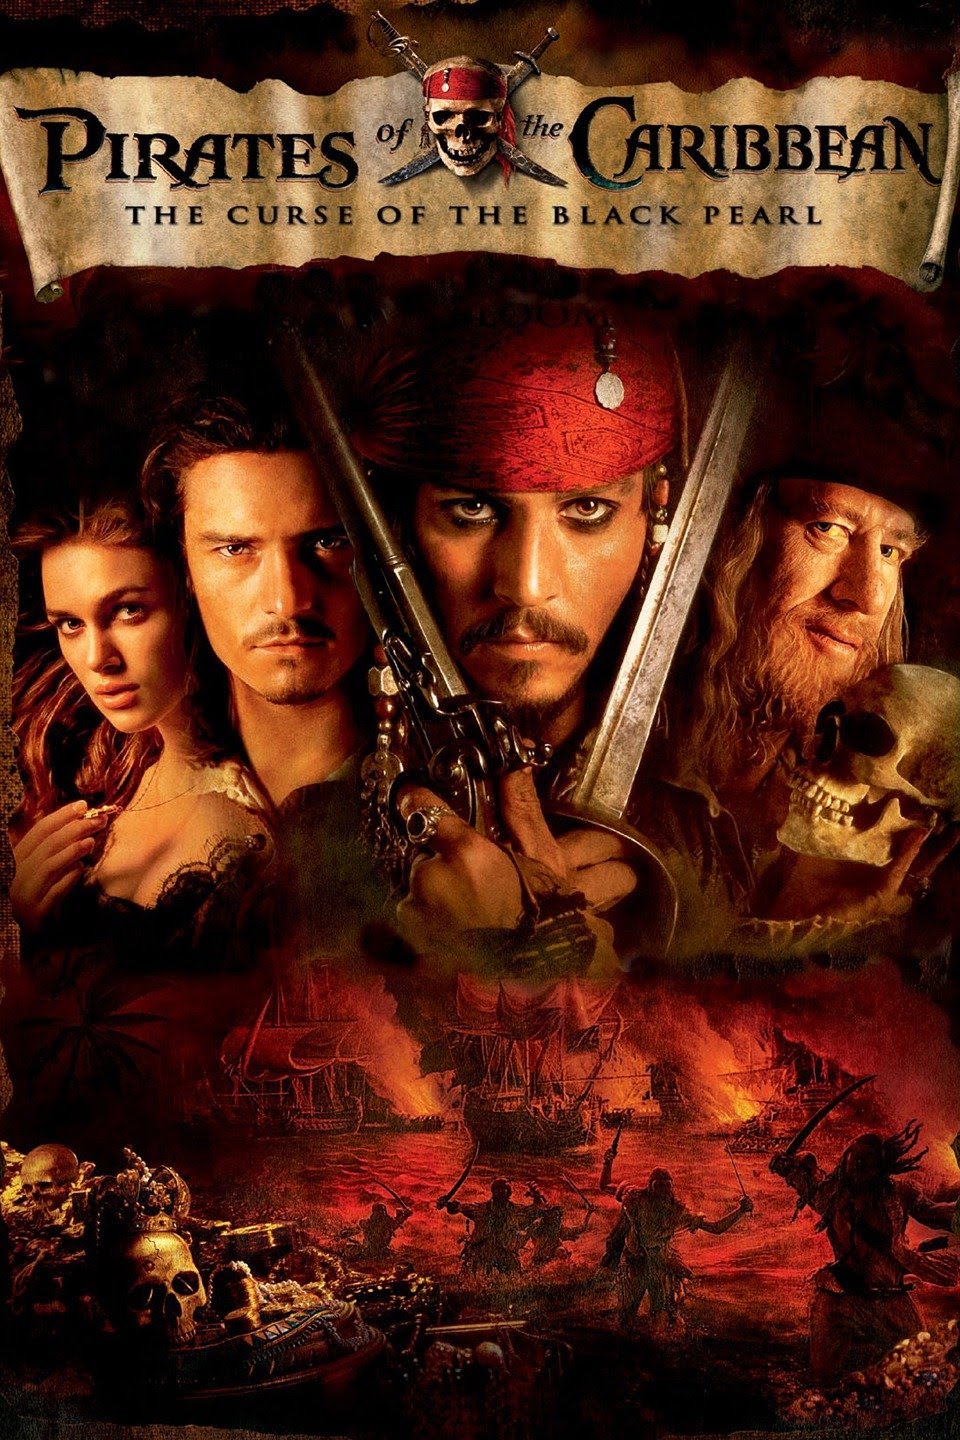 Pirates of the Caribbean (série de filmes) – Wikipédia, a enciclopédia livre